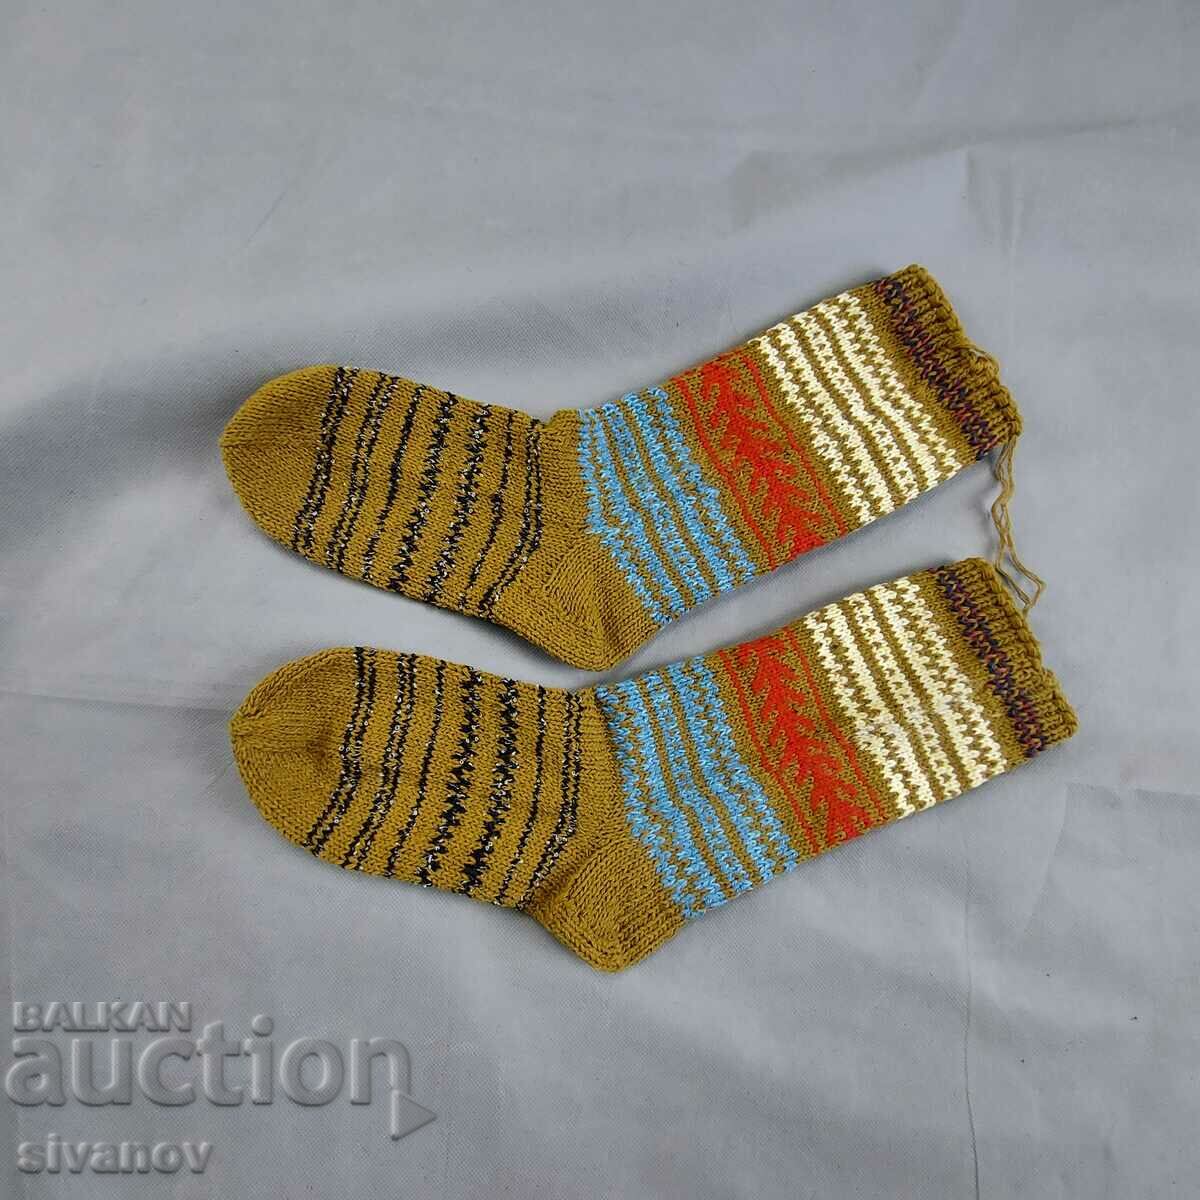 Μάλλινες κάλτσες για έθνικ φολκλόρ φορεσιά #2357